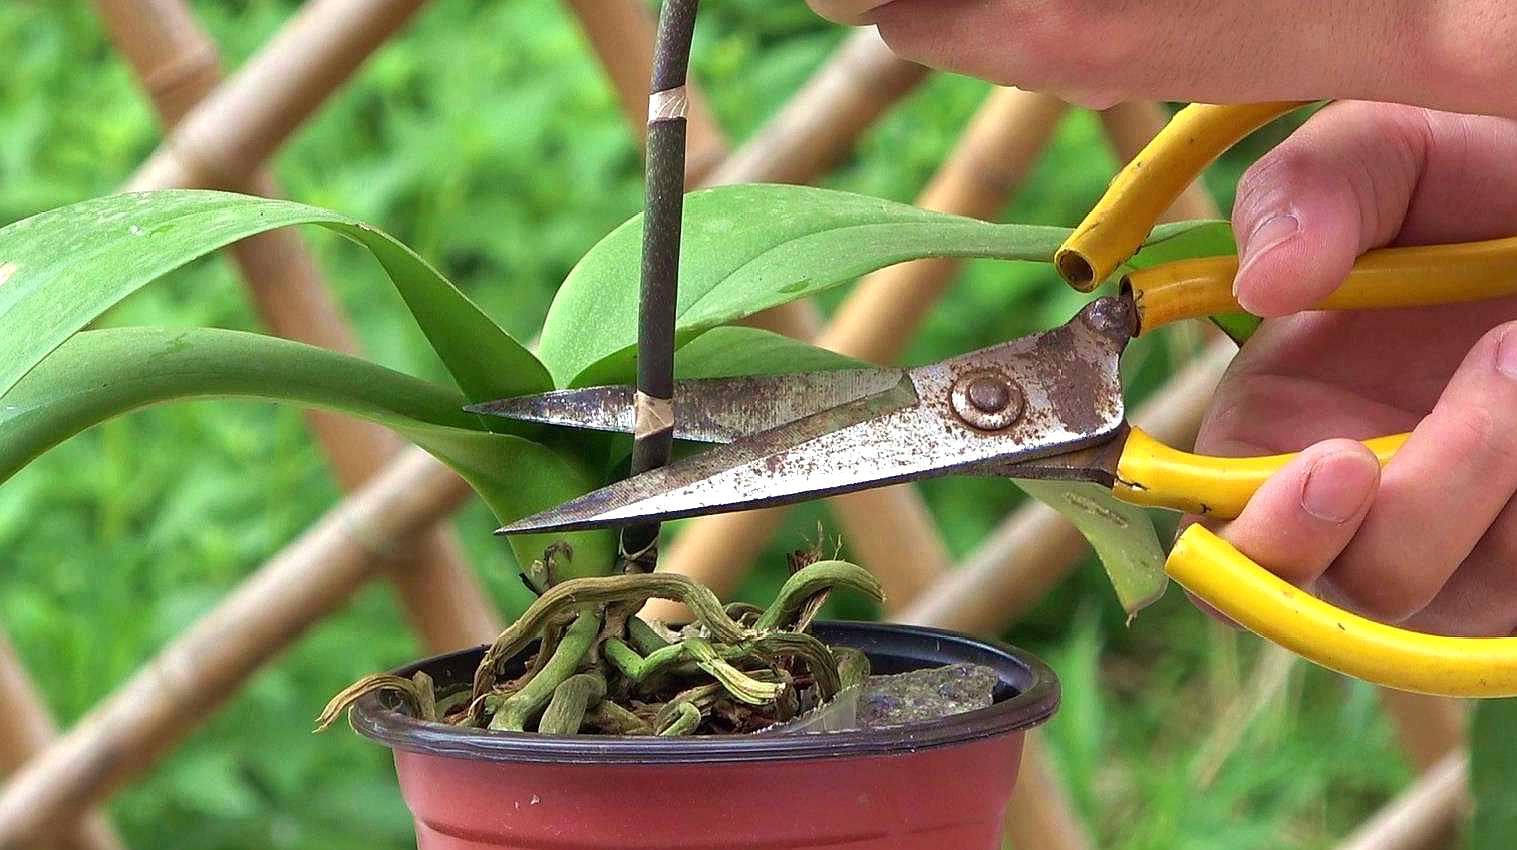 2蝴蝶兰养护方法:剪刀要进行消毒,将修剪下来的枝条,切口的地方晾干